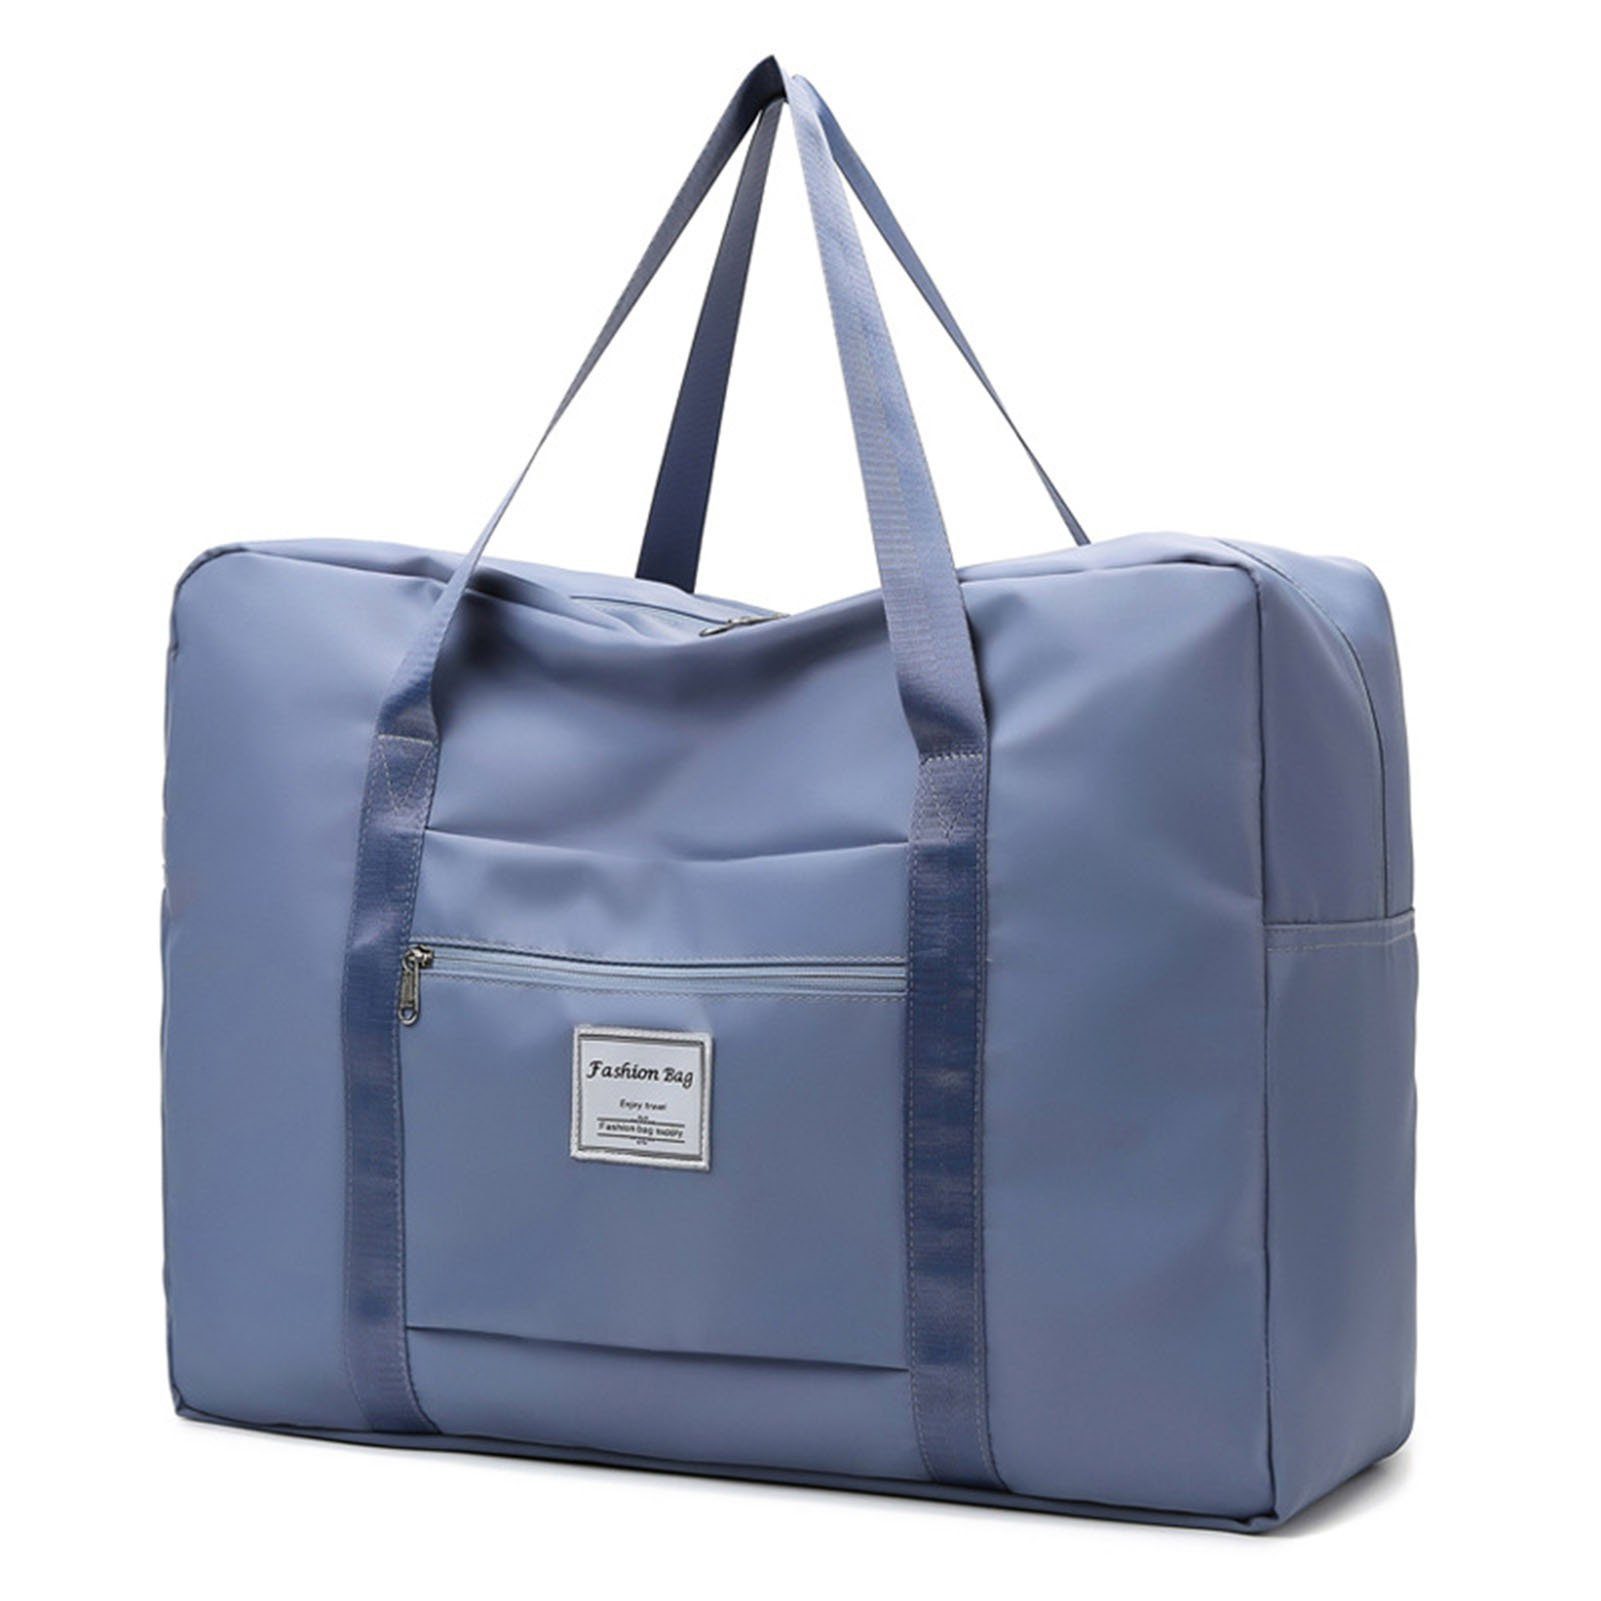 Blusmart Sporttasche Einfarbige, Große Sporttasche Mit Reißverschluss, Große Kapazität blue